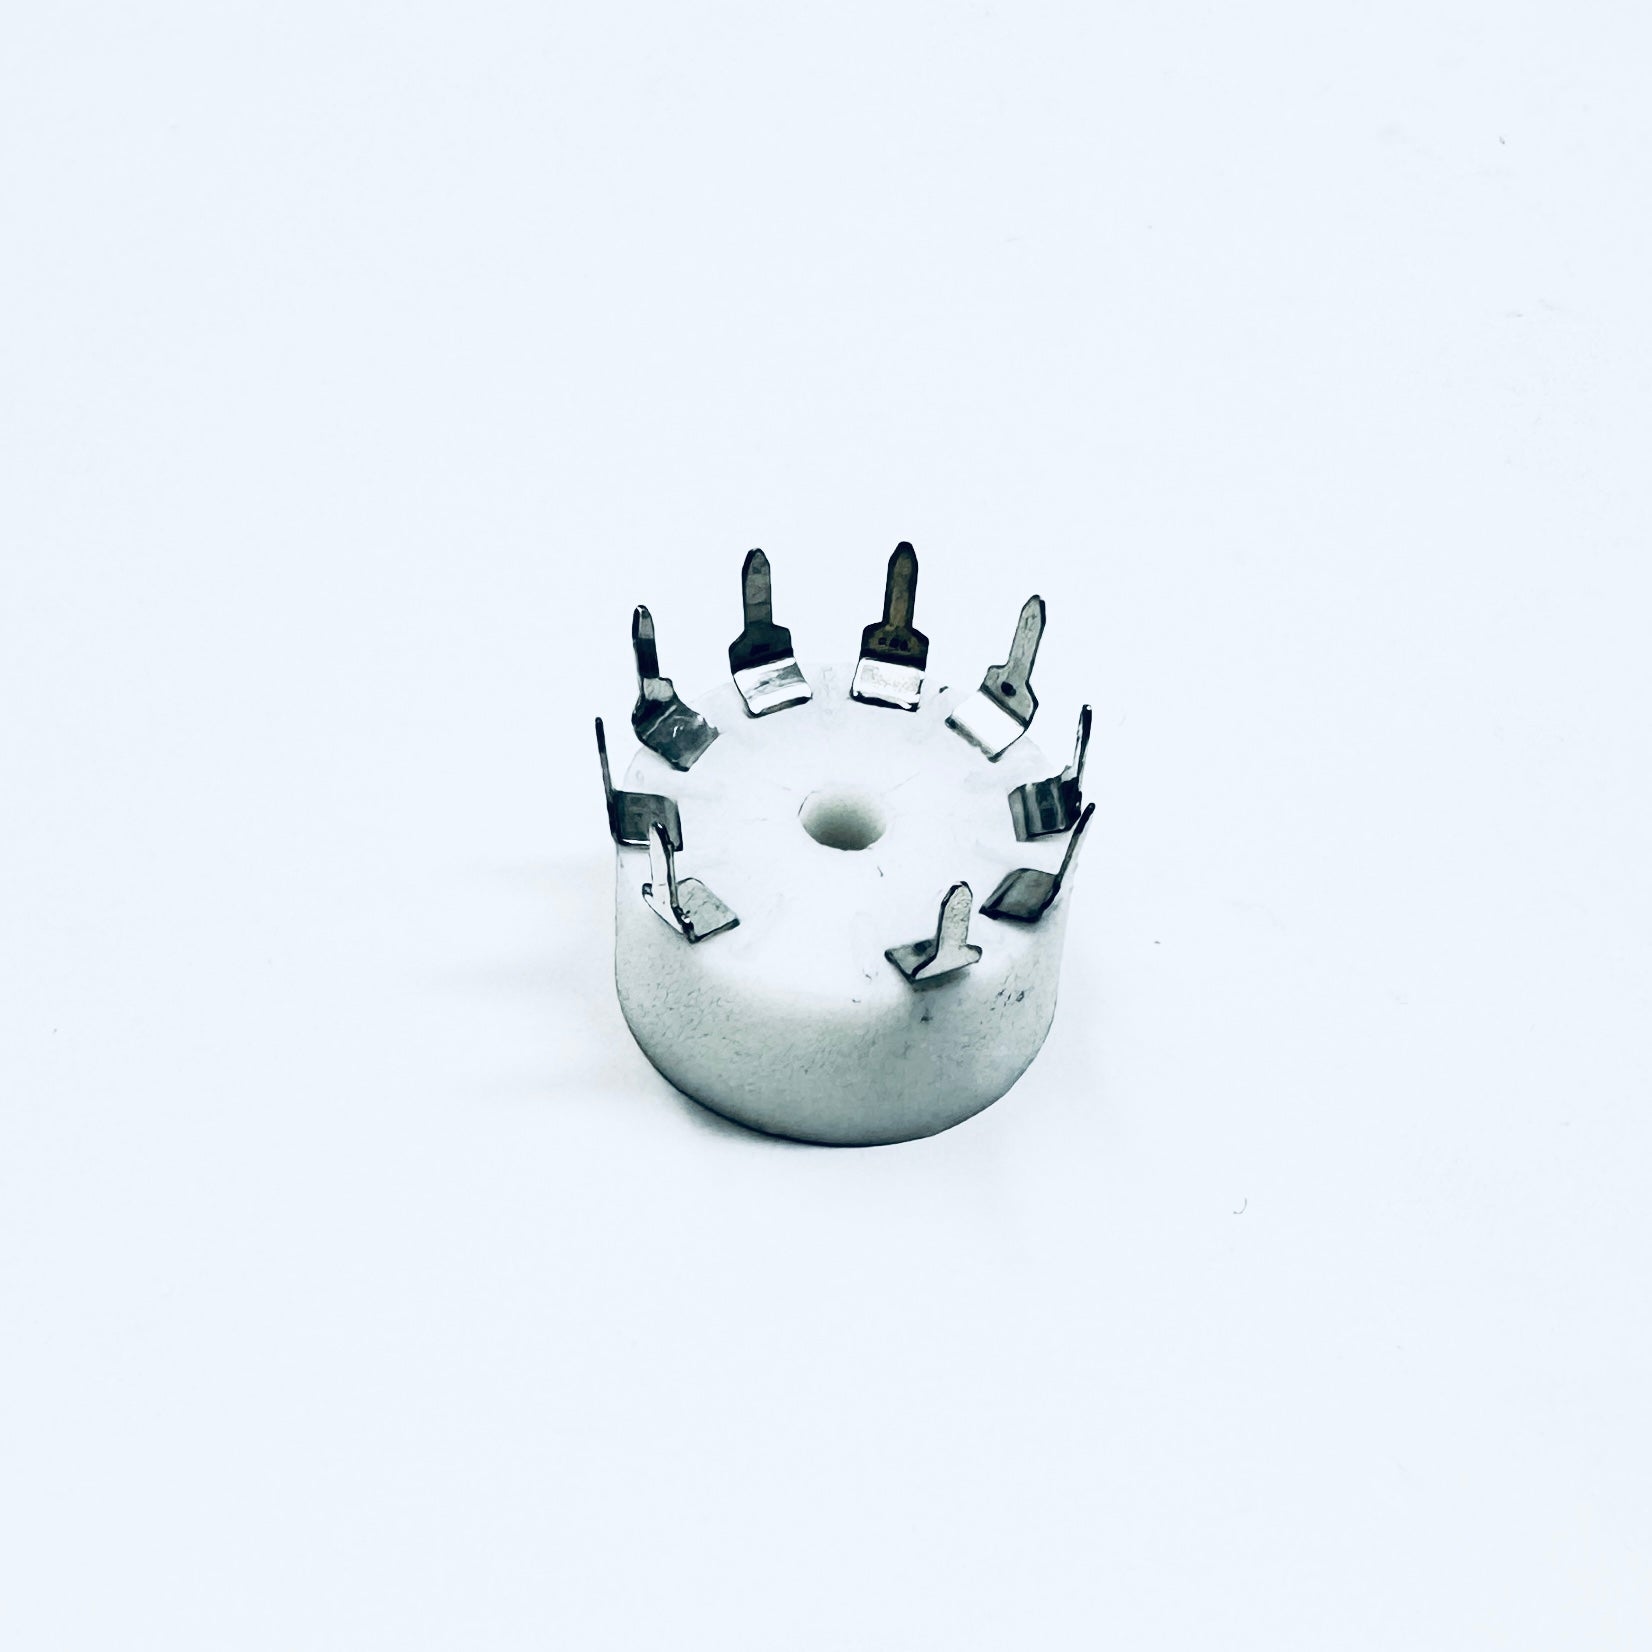 Ceramic 9 Pin Socket Small Footprint - TUS9PC2, ceramic socket, small pins, ruby sockets, 9- pin